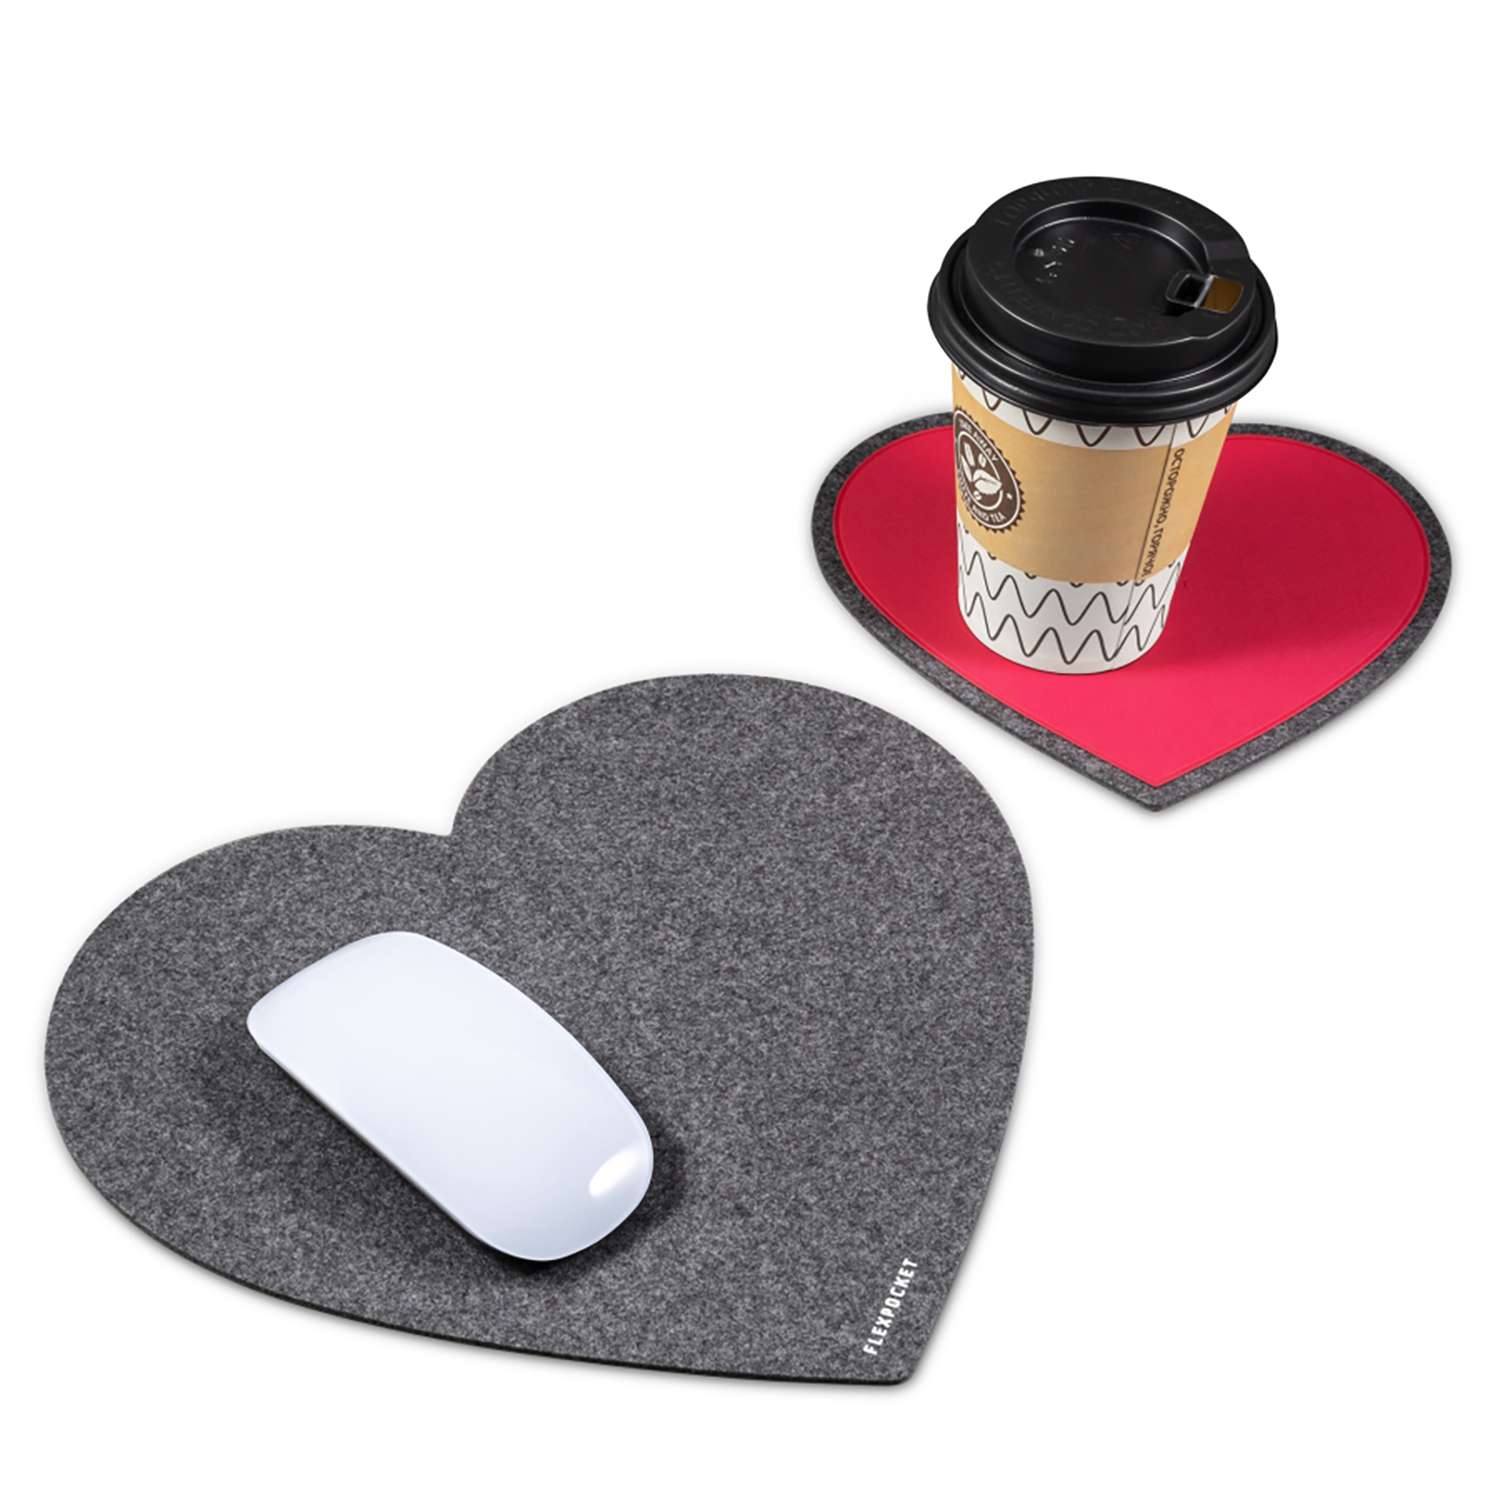 Настольный коврик Flexpocket для мыши в виде сердца с подставкой под кружку темно-серый 2 шт в комплекте - фото 2